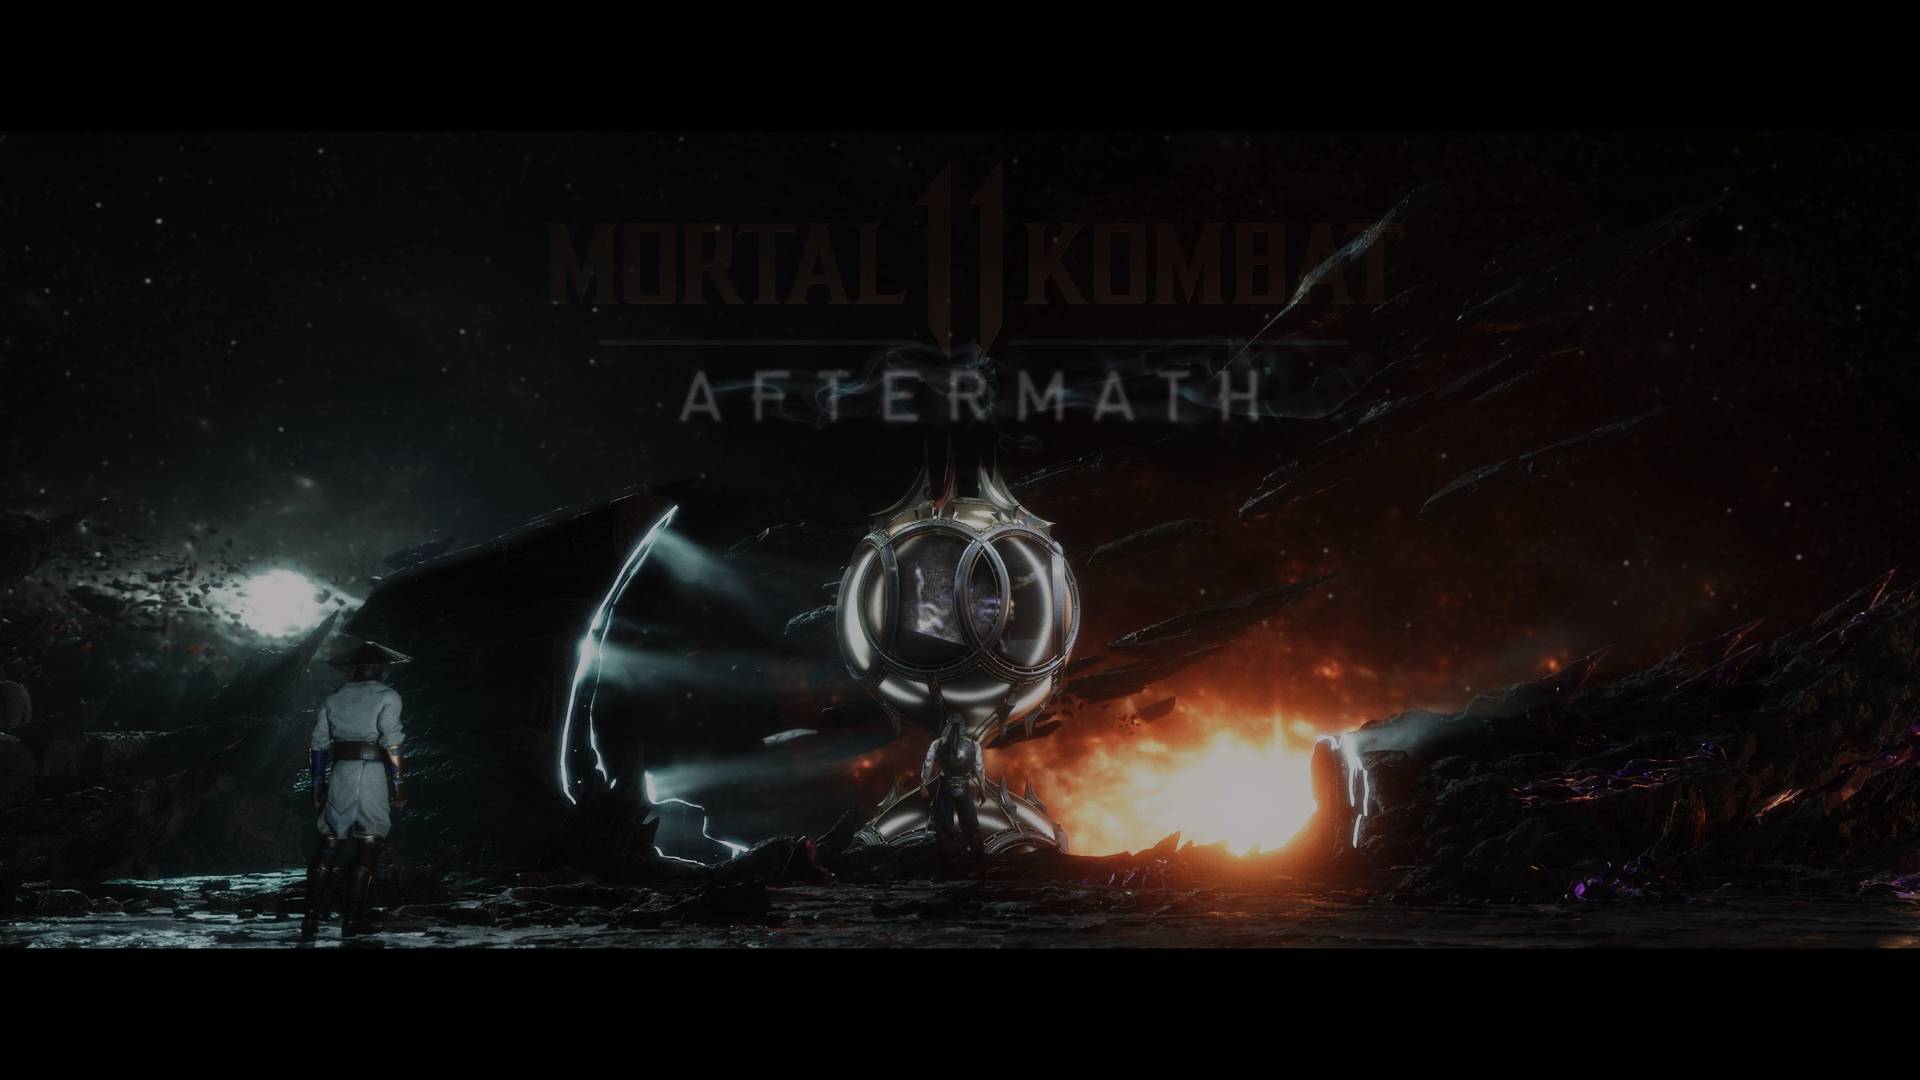 Análisis de Mortal Kombat 11: Aftermath, una expansión con muchos